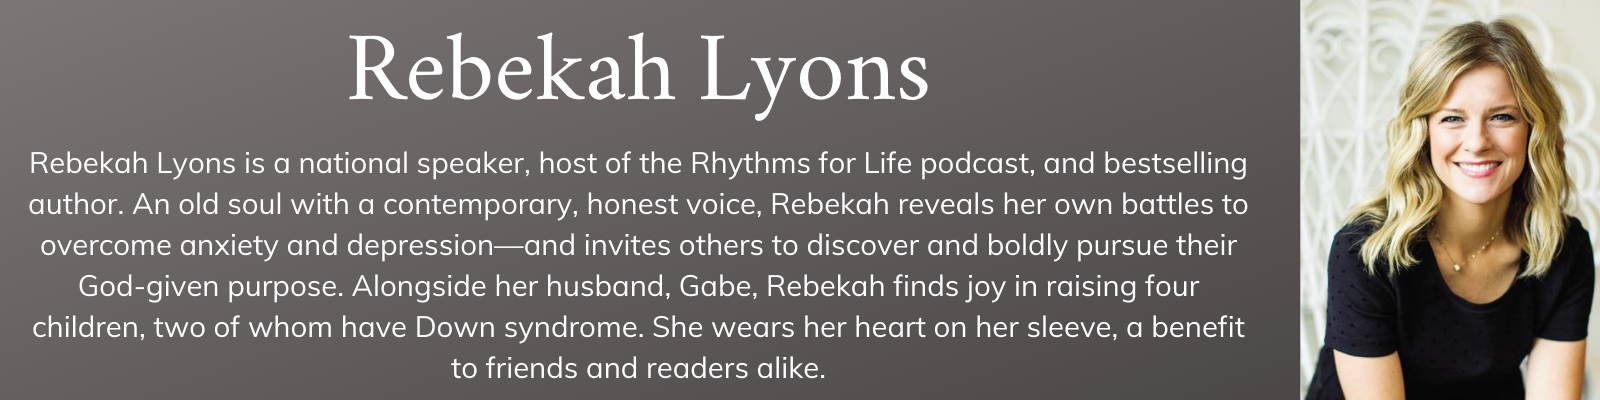 Rebekah Lyons